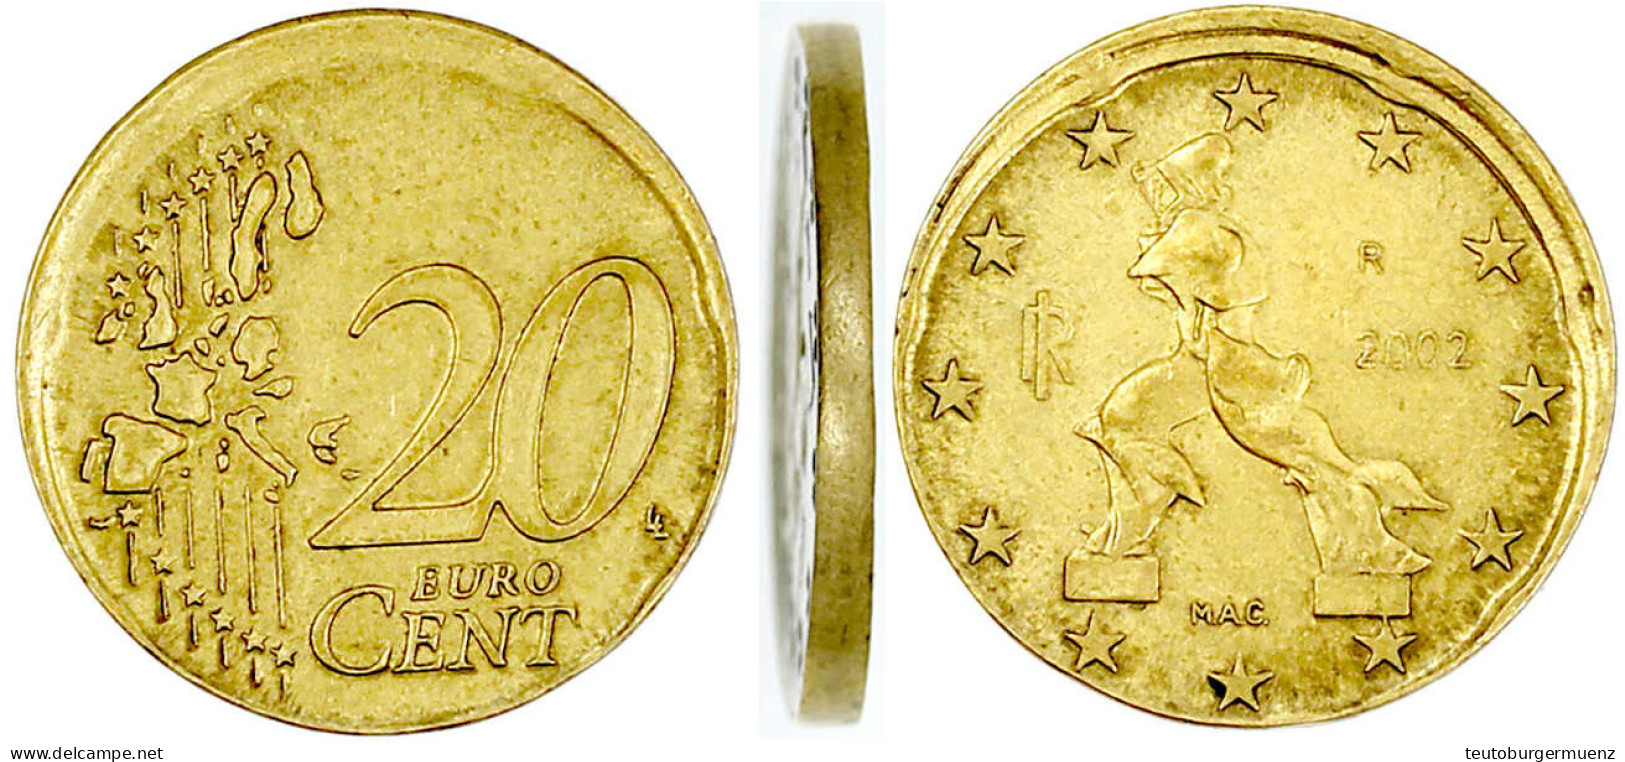 Frankreich 20 Euro-Cent 2002 Ohne Randprägung Und Etwas Dezentriert (vermutlich Aus Prägeform Gesprungen). Vorzüglich, S - Deutschland